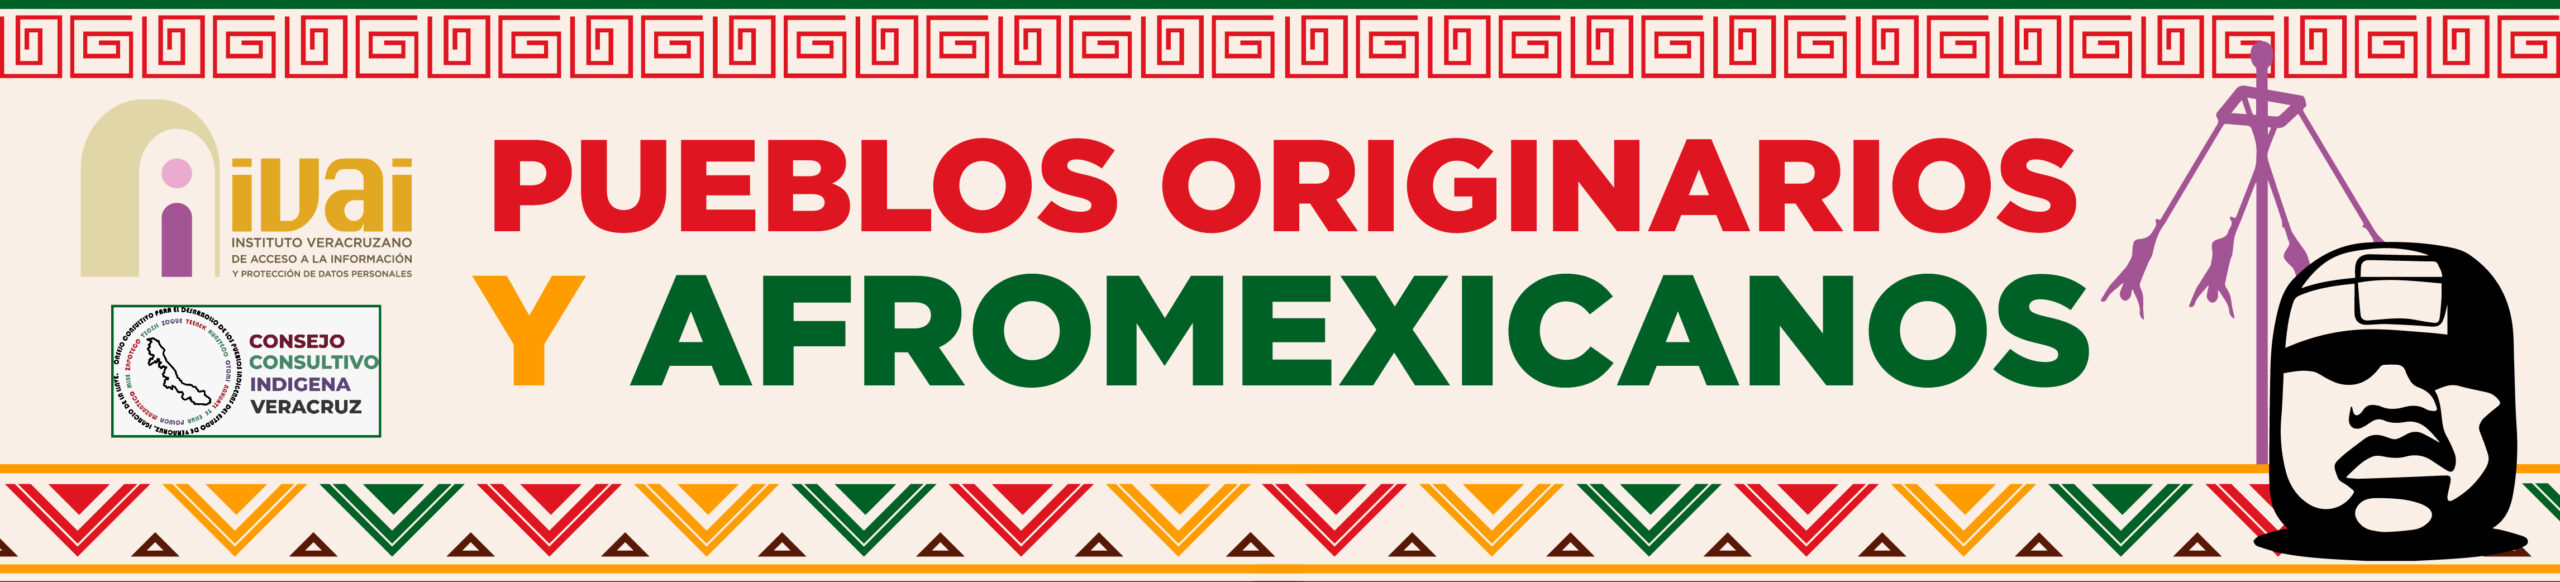 Banner Pueblos Originarios y Afromexicanos